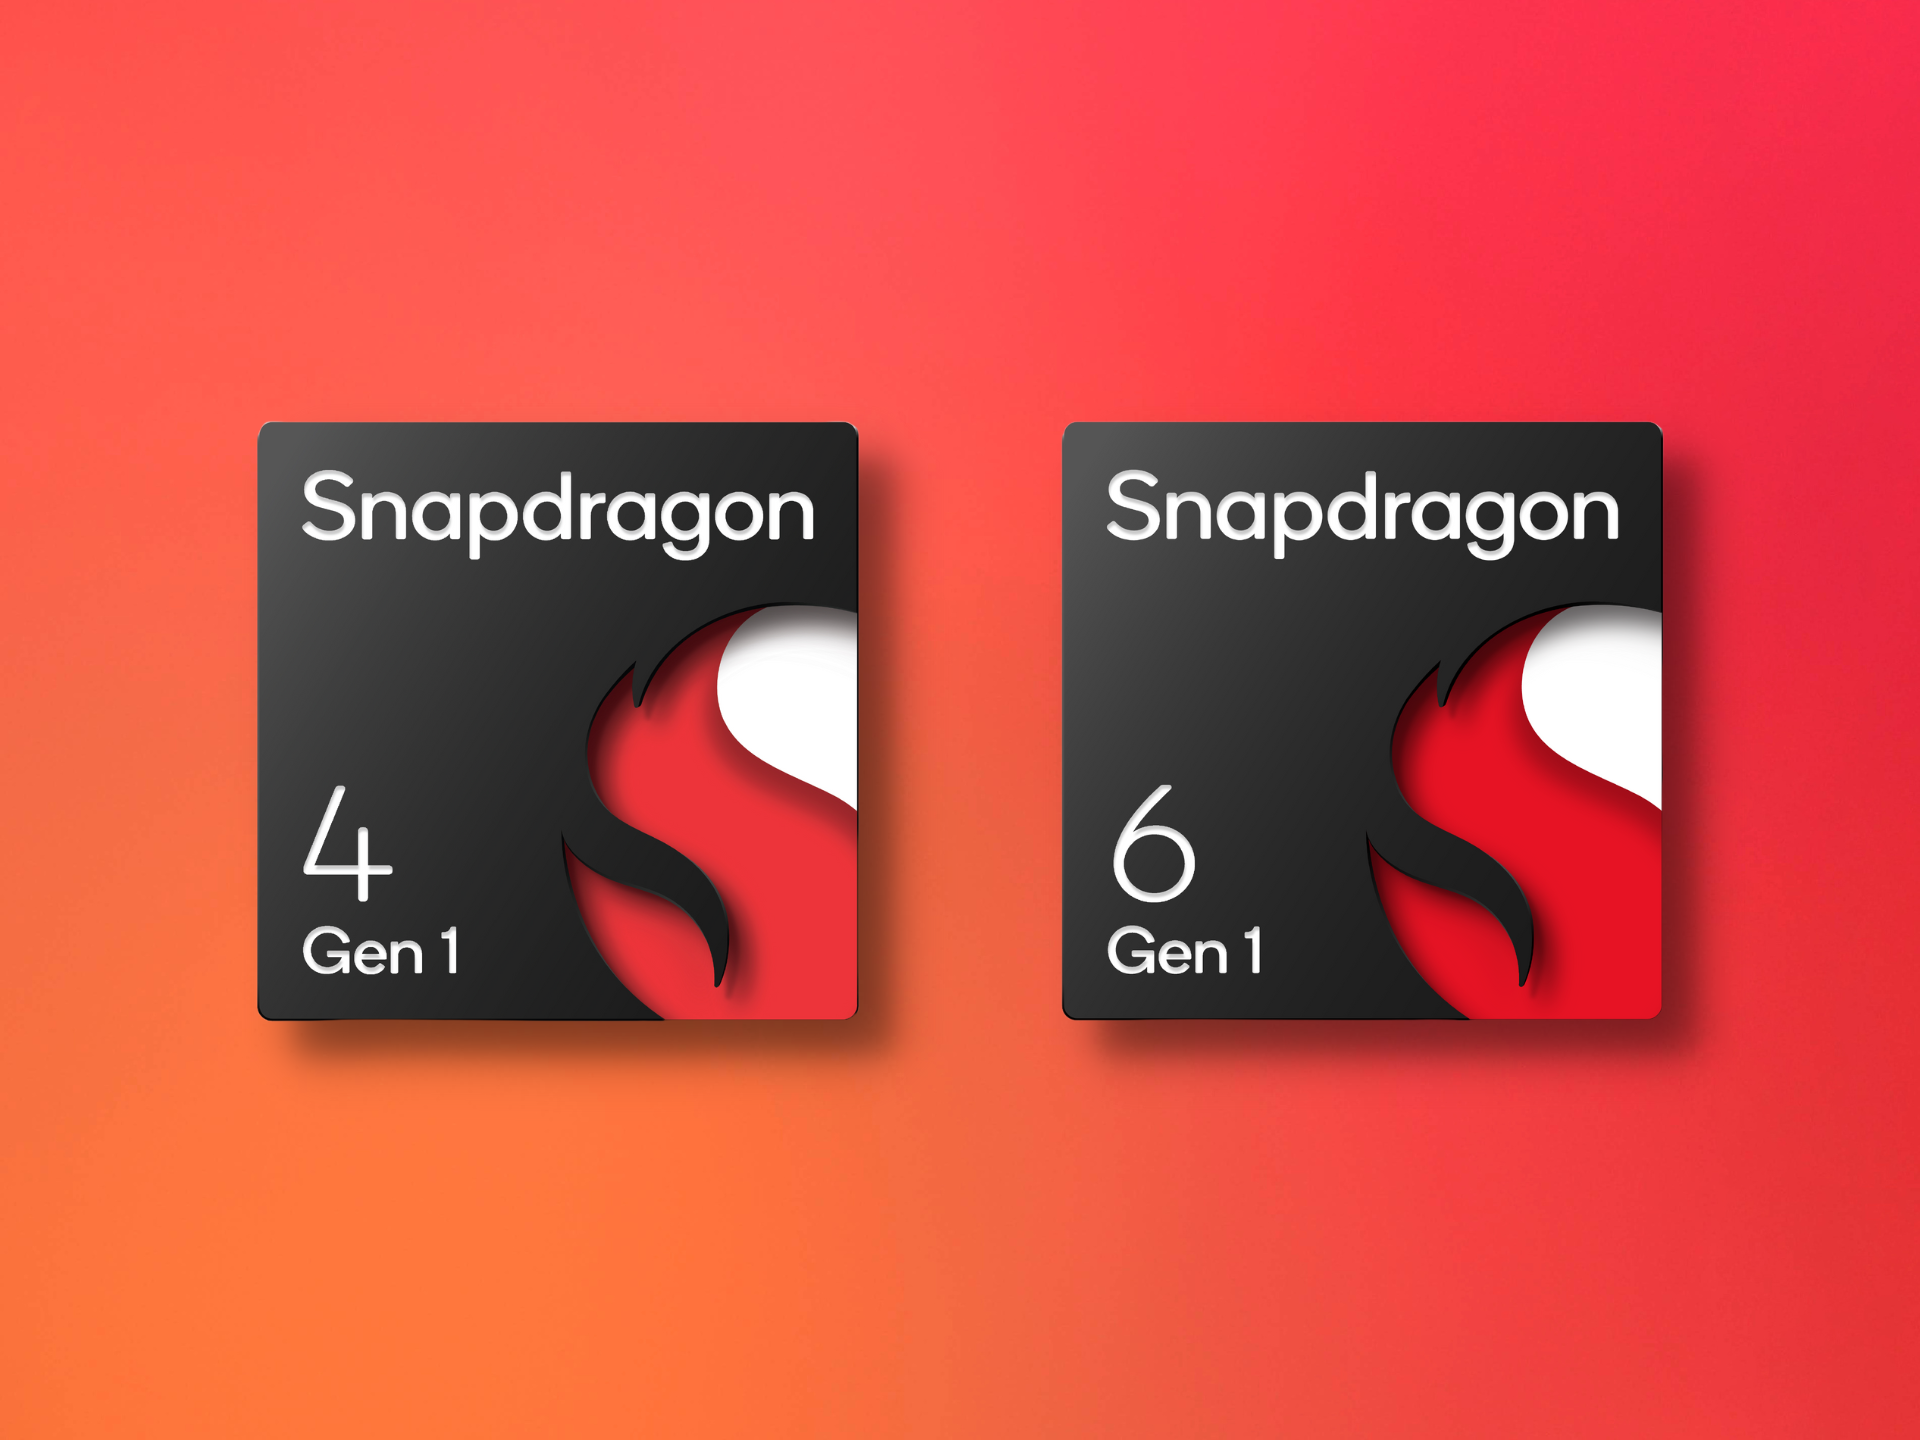 LI Qualcomm Snapdragon 6 Gen 1 and Snapdragon 4 Gen 1 chip badge